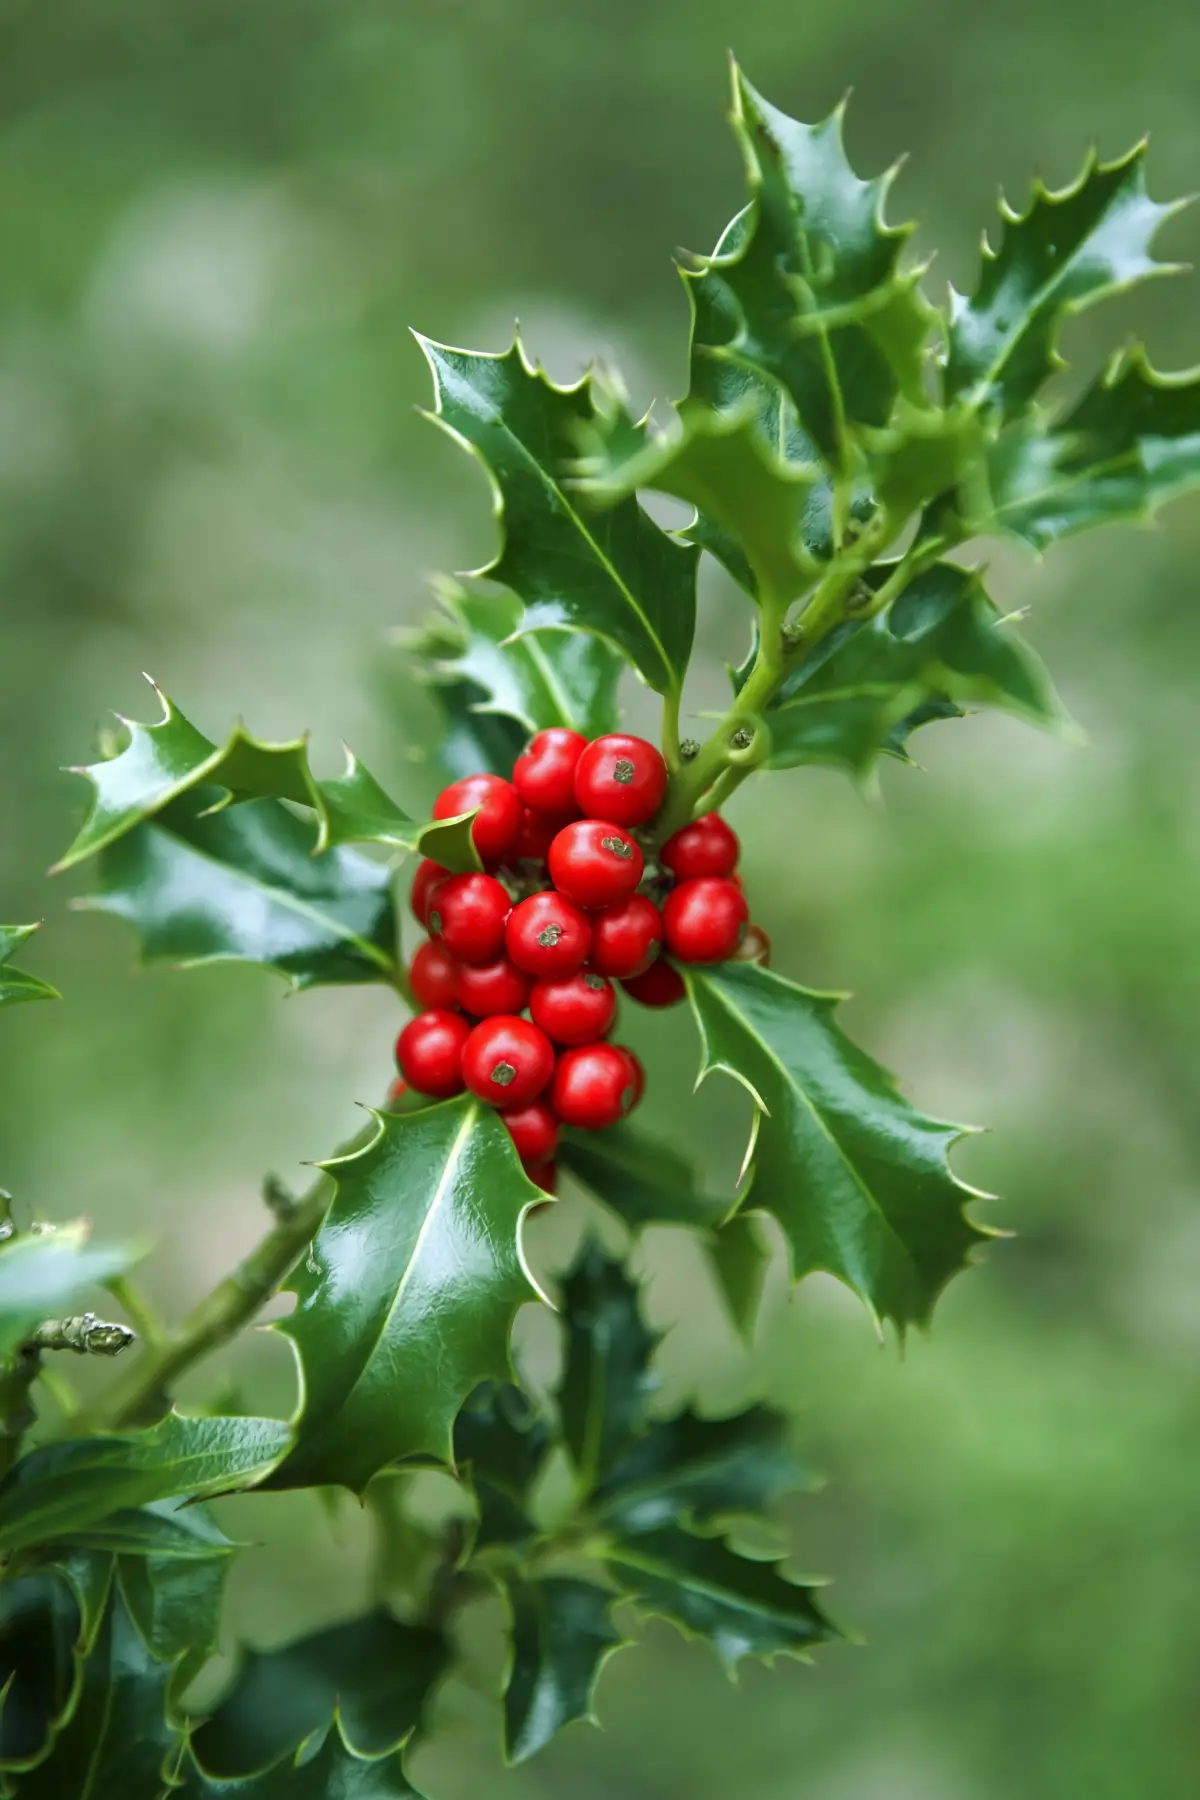 blumen zu weihnachten verschenken welche pflanze zu weihnachten schenken stechenpalme mit roten beeren